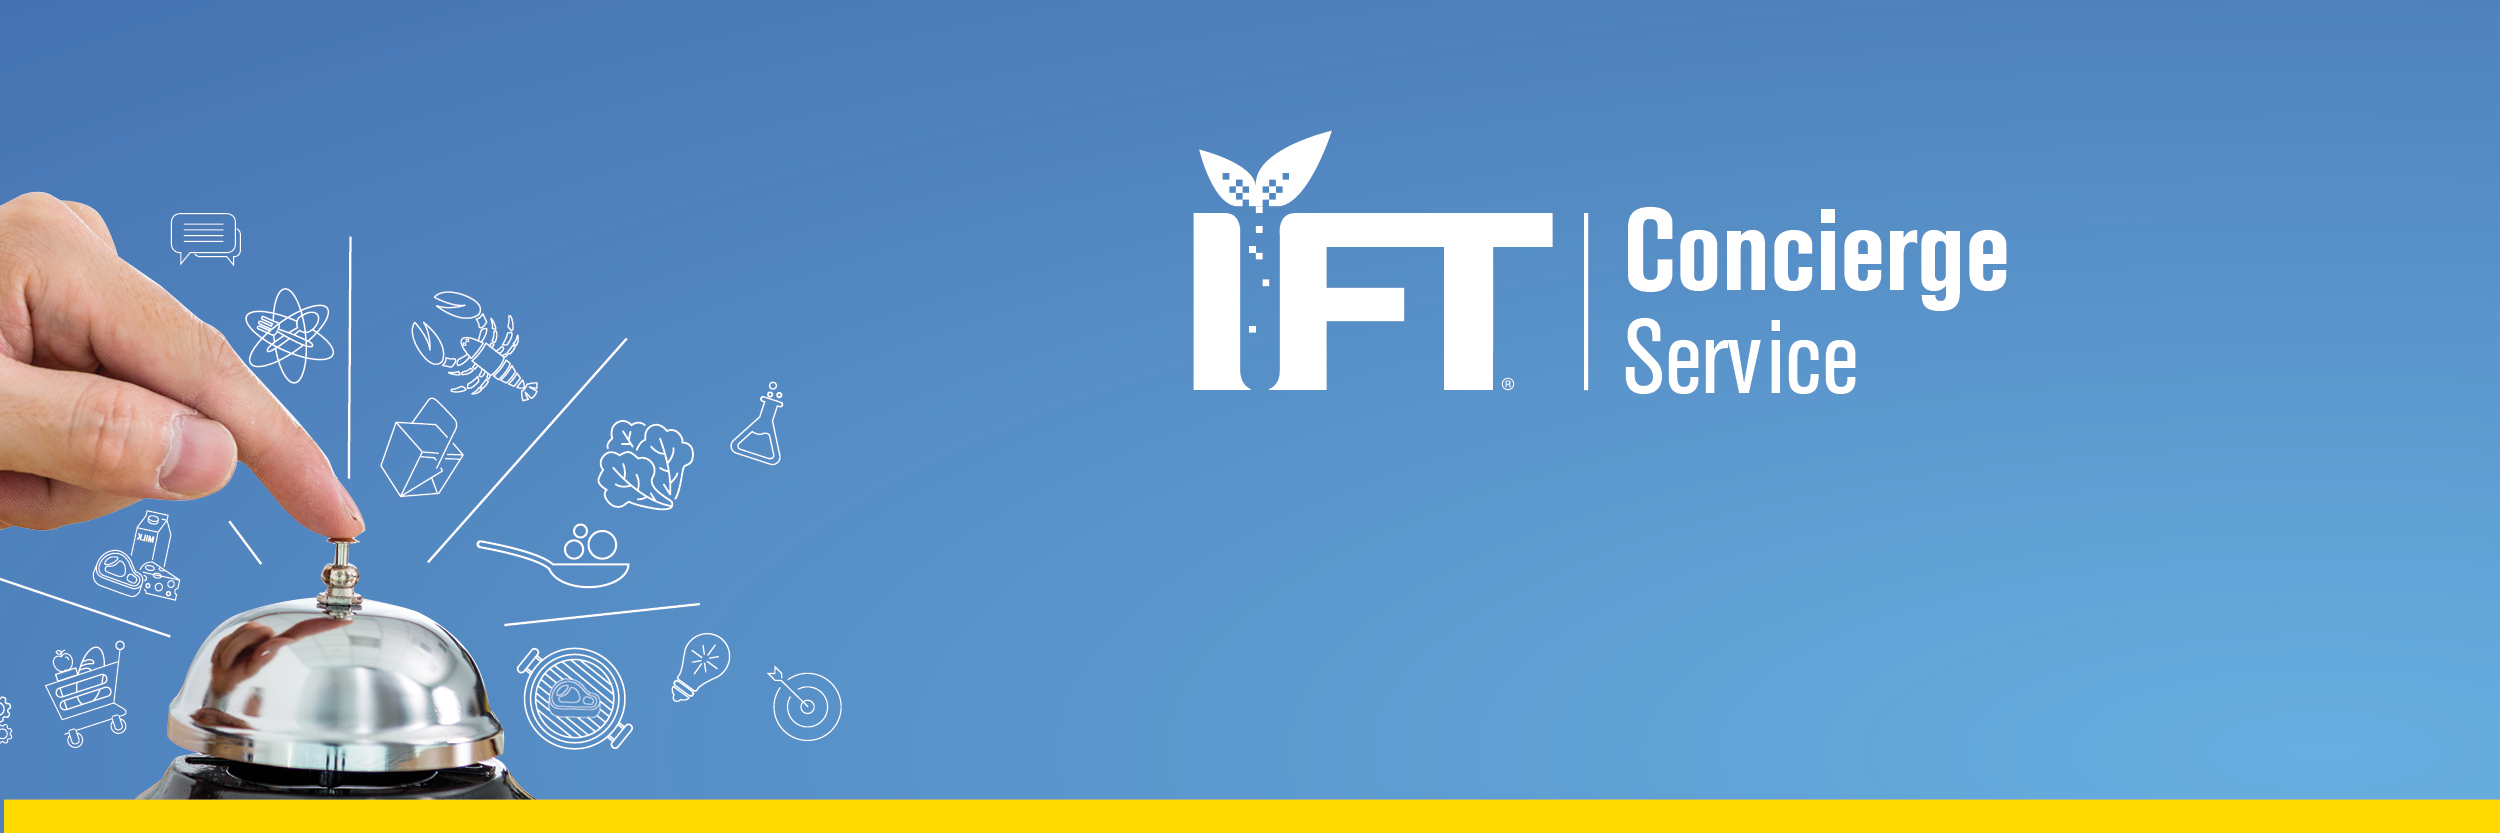 IFT's Concierge Service